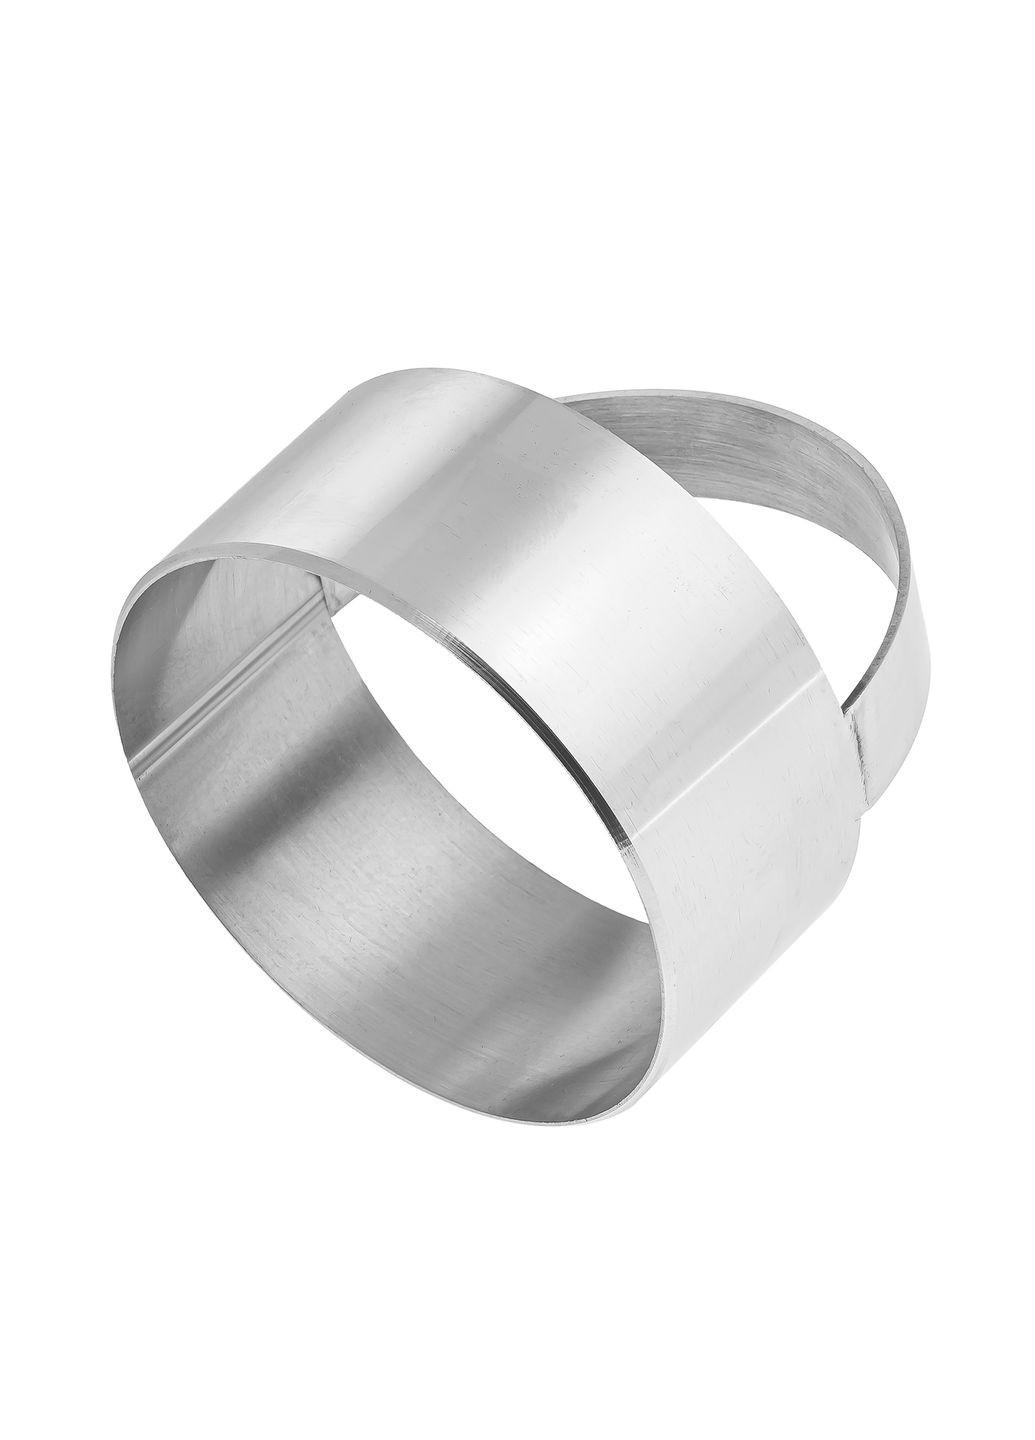 Металлическая форма кольцо с ручкой для вырезки теста (вареников, пельменей, печенья) Ø 7 см Metalworkshop (272111404)